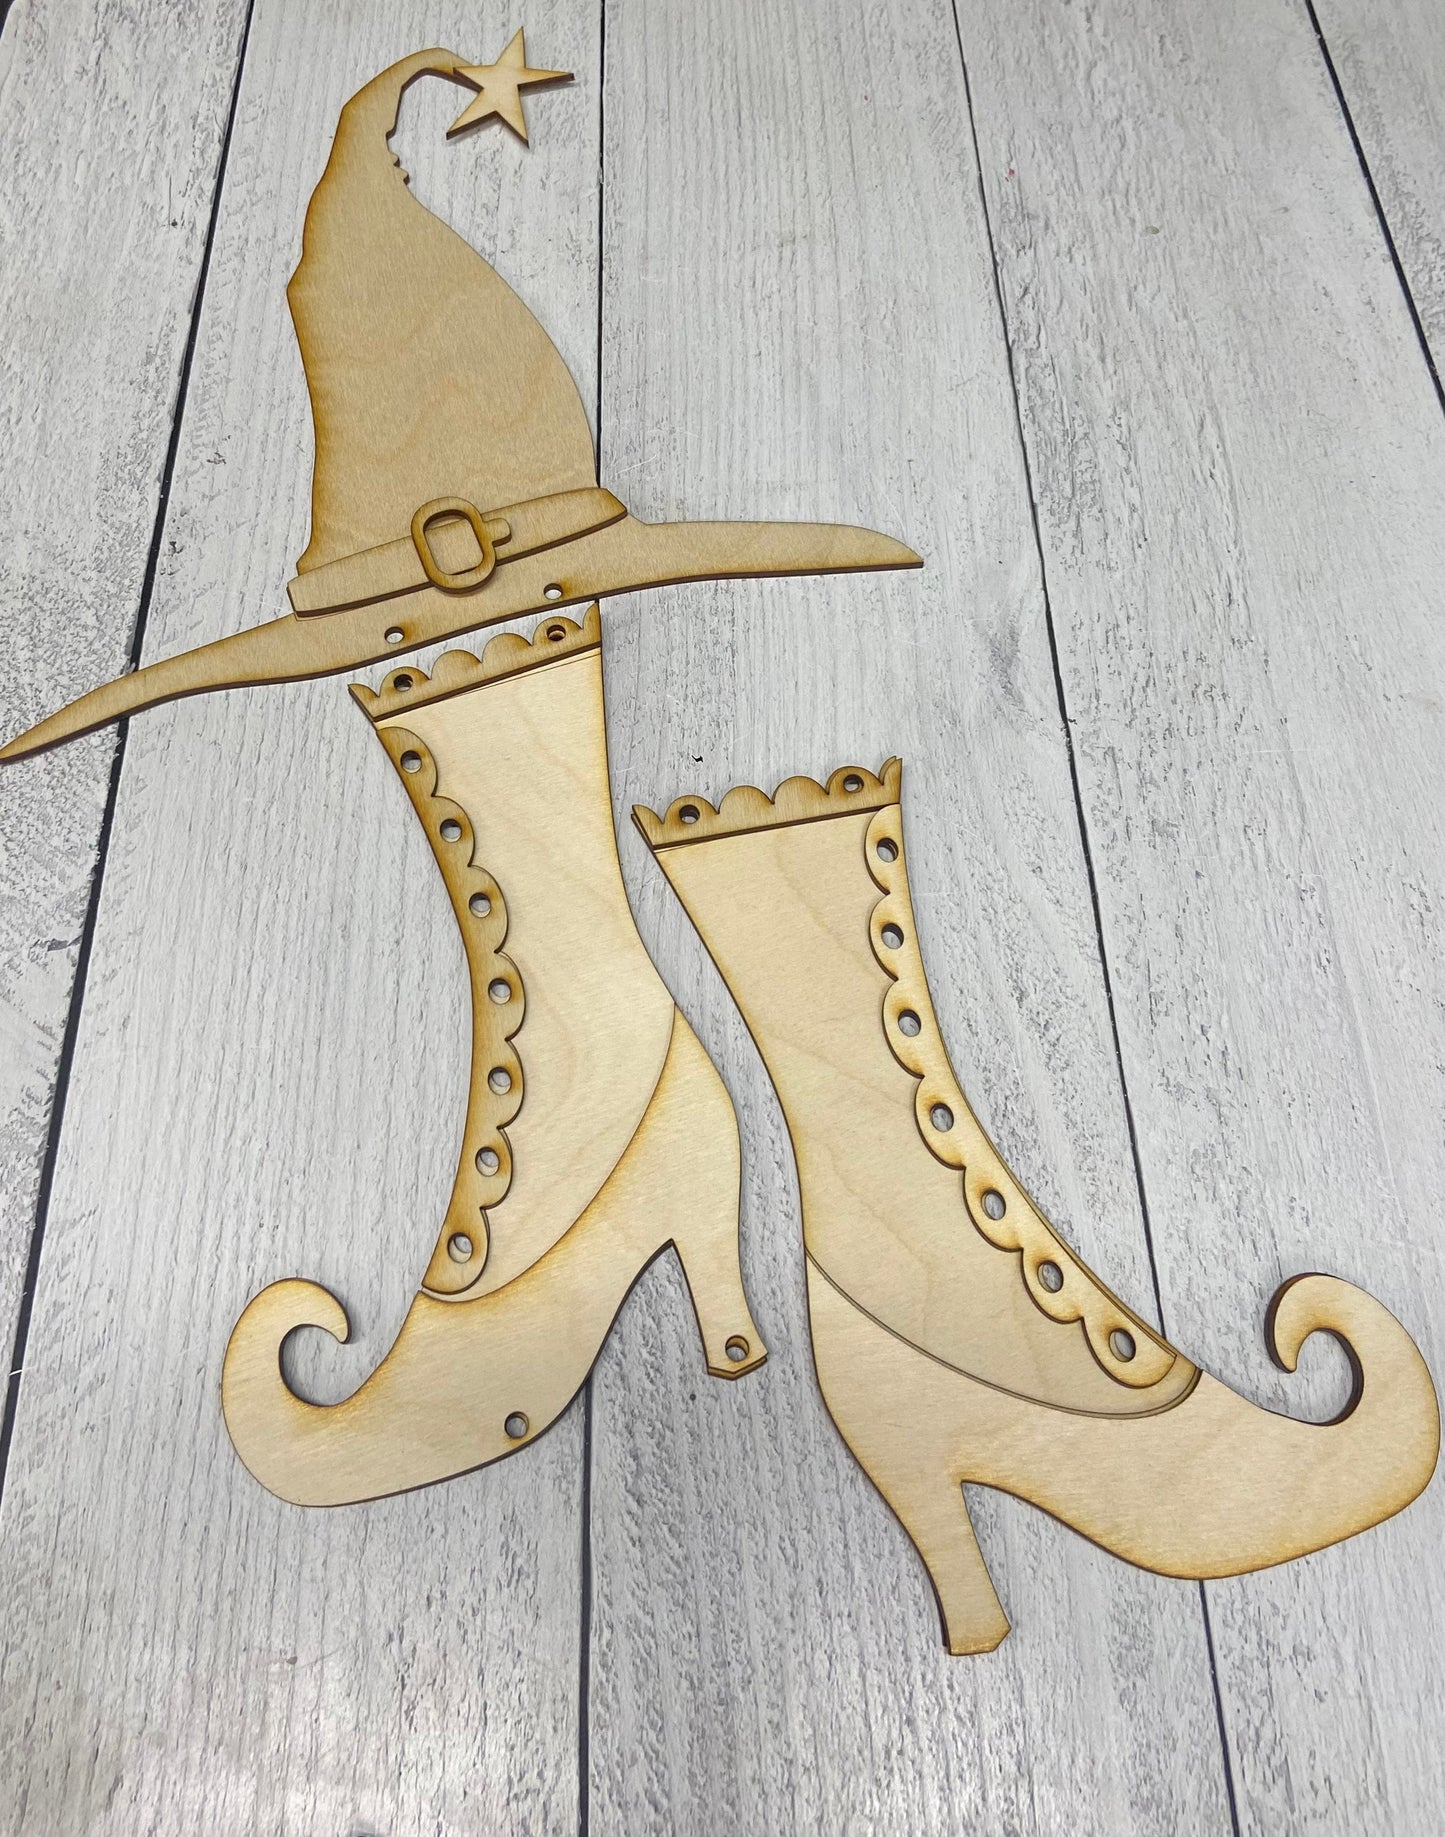 DIY Witches Hat and Boots door hanger (unpainted)